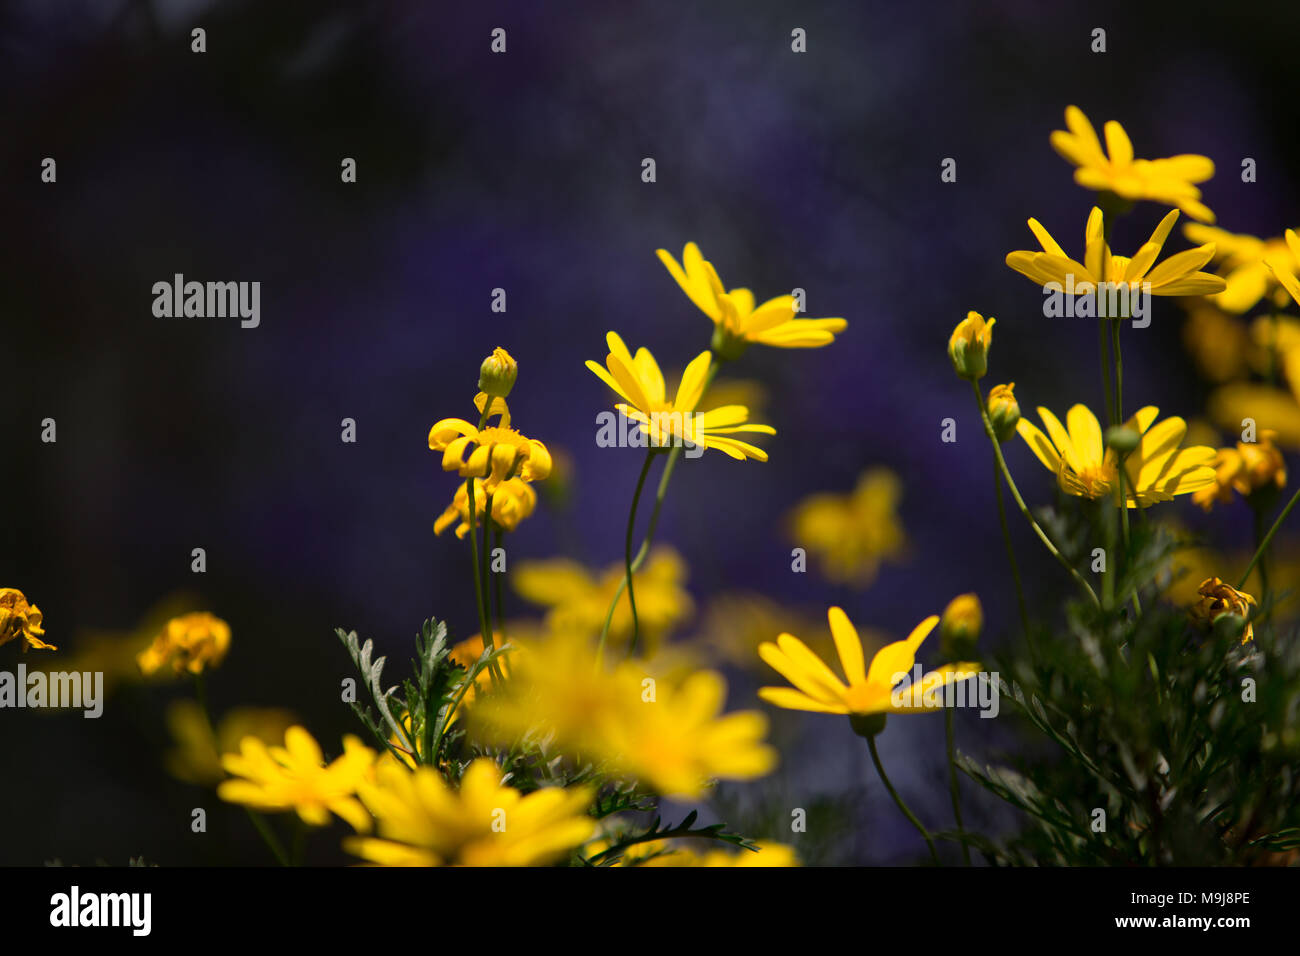 Immagine del fiore giallo sulla sfocatura dello sfondo viola Foto Stock